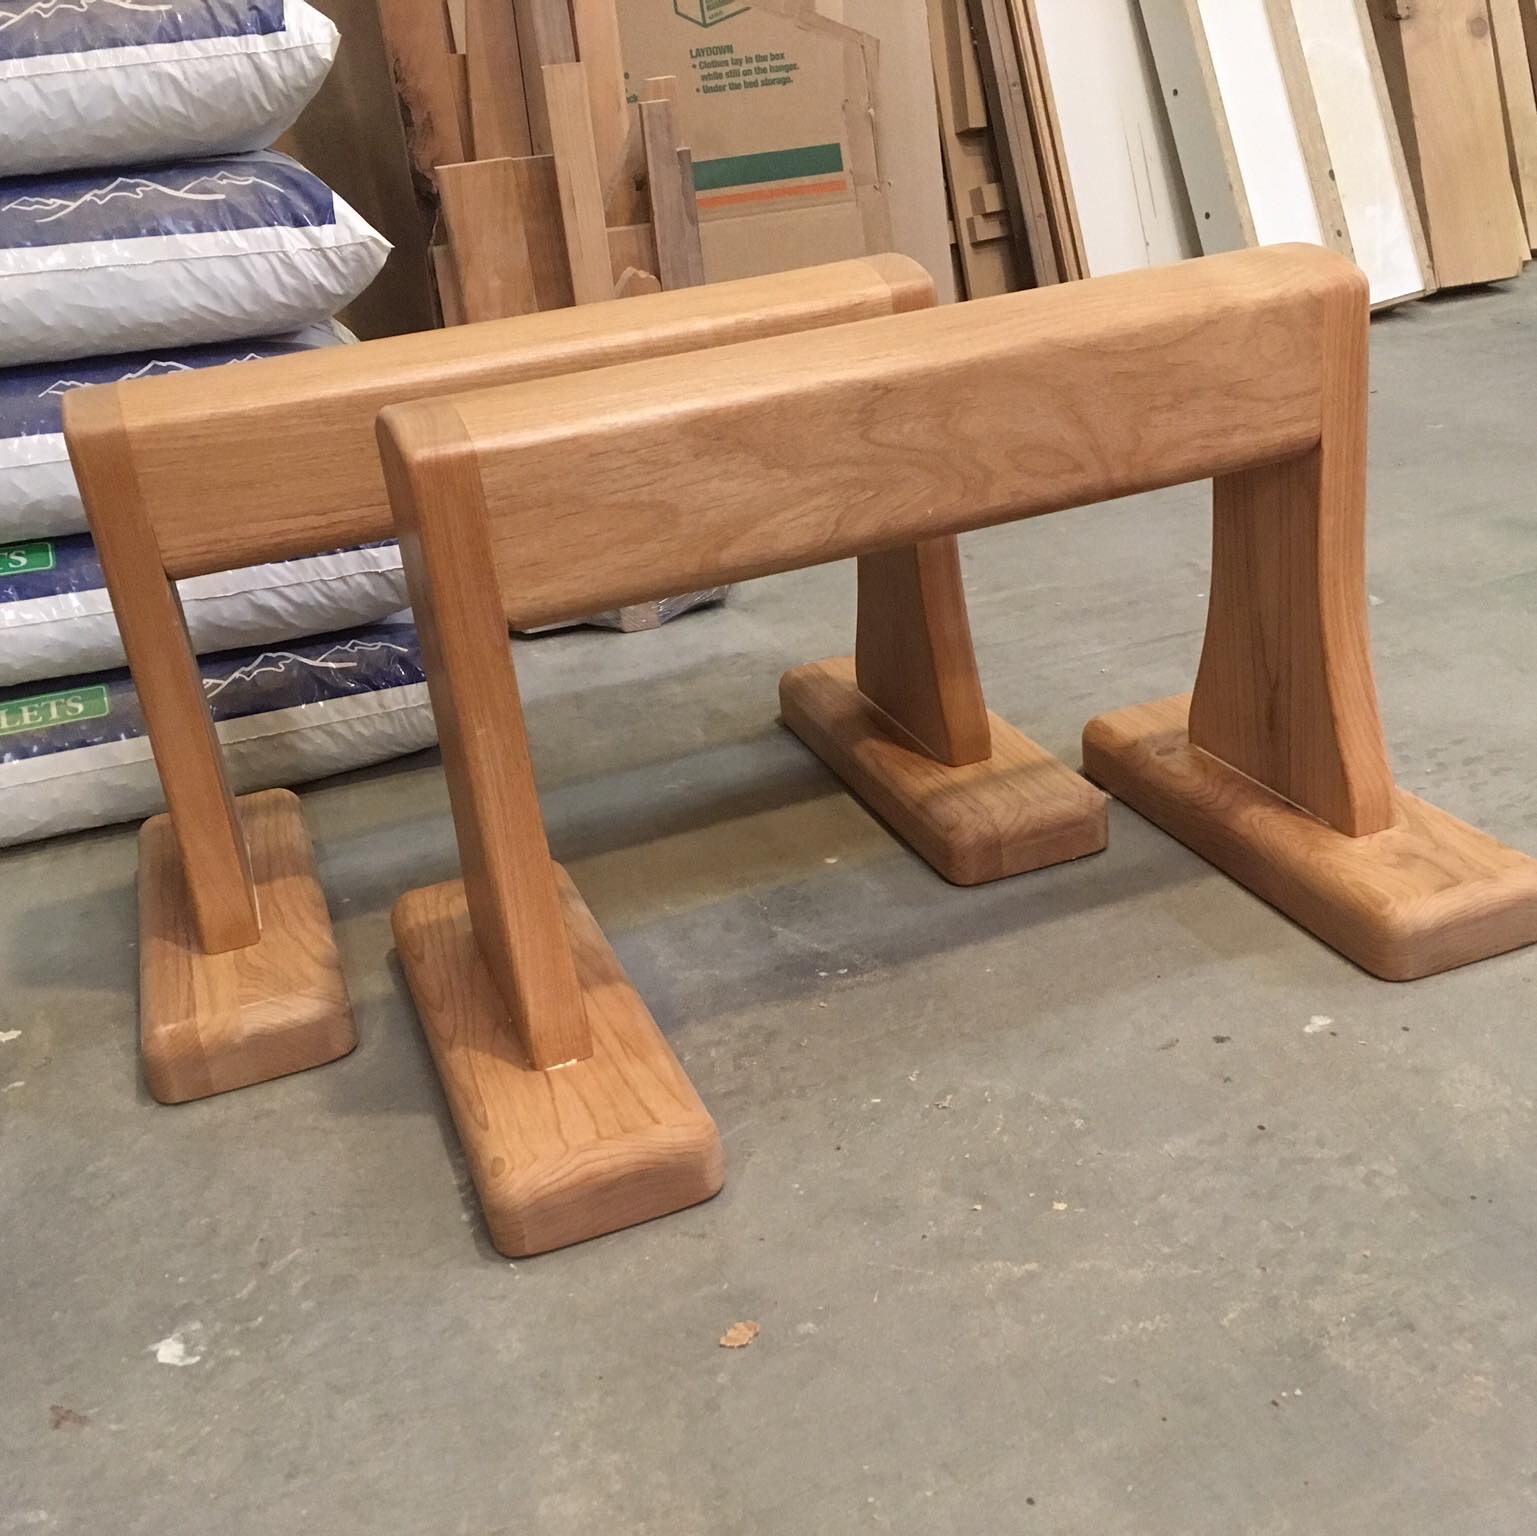 wooden yoga props